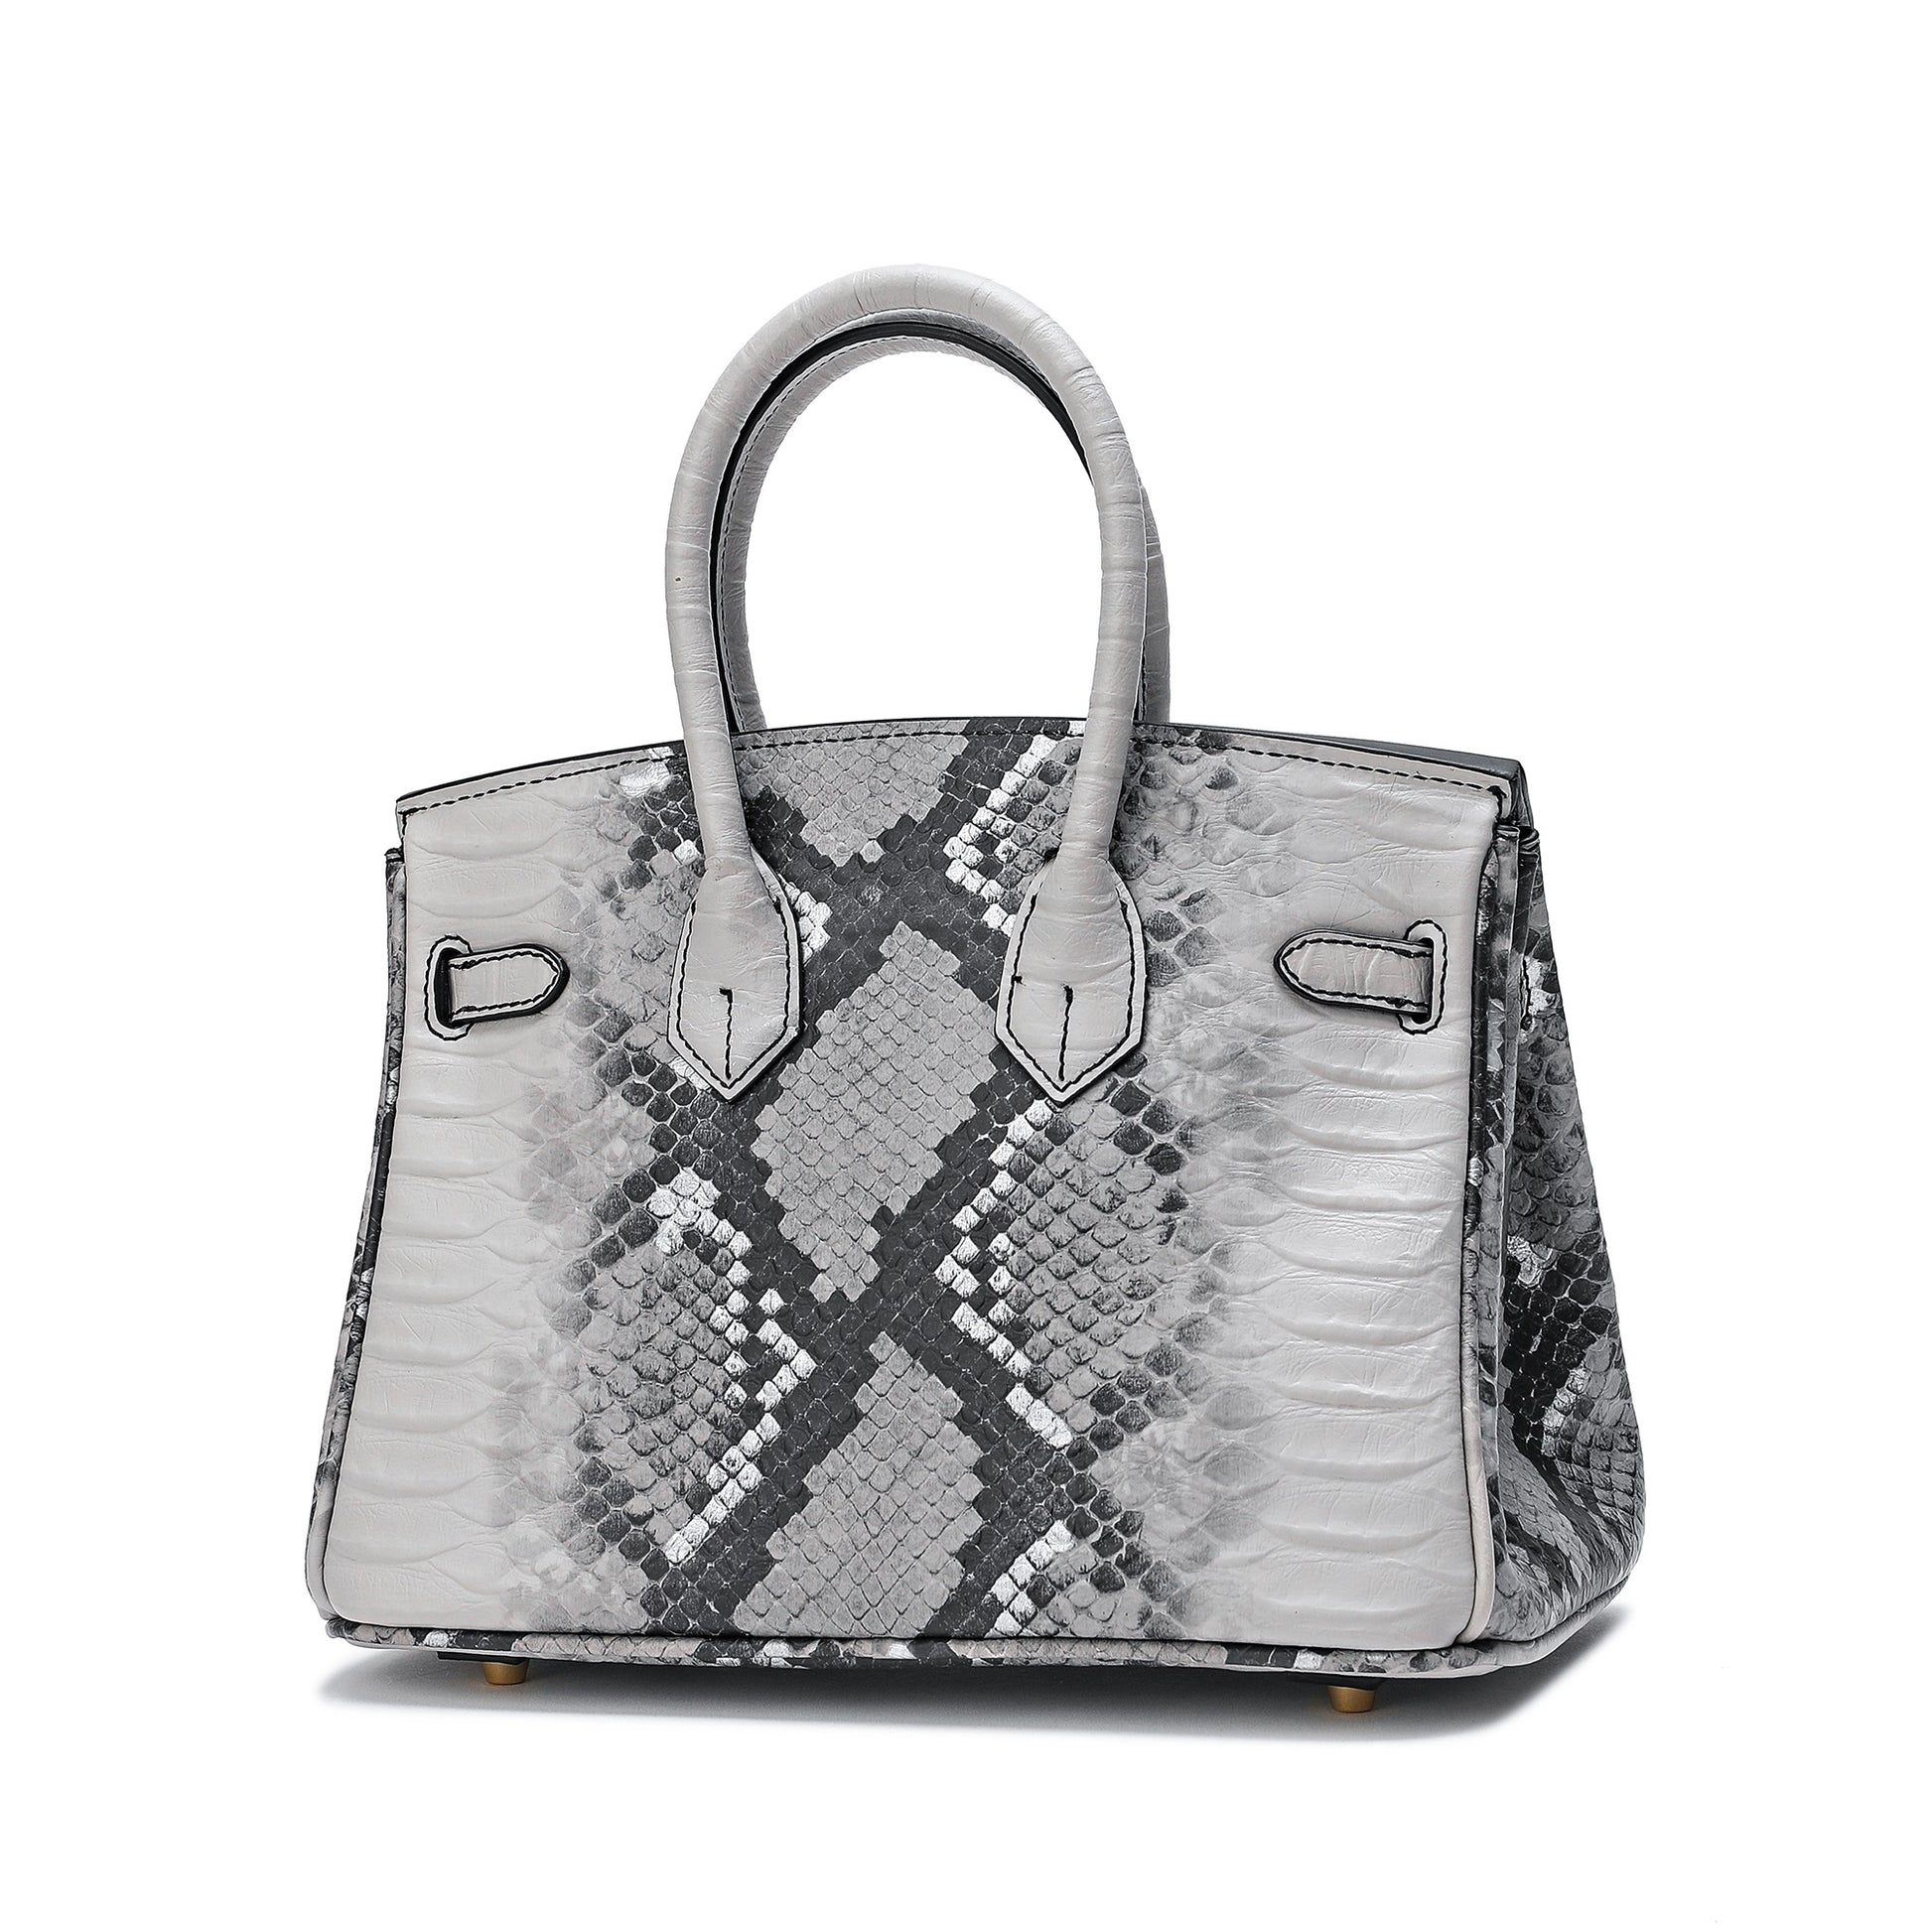 Tiffany Checkered Handbag Doorbuster Black